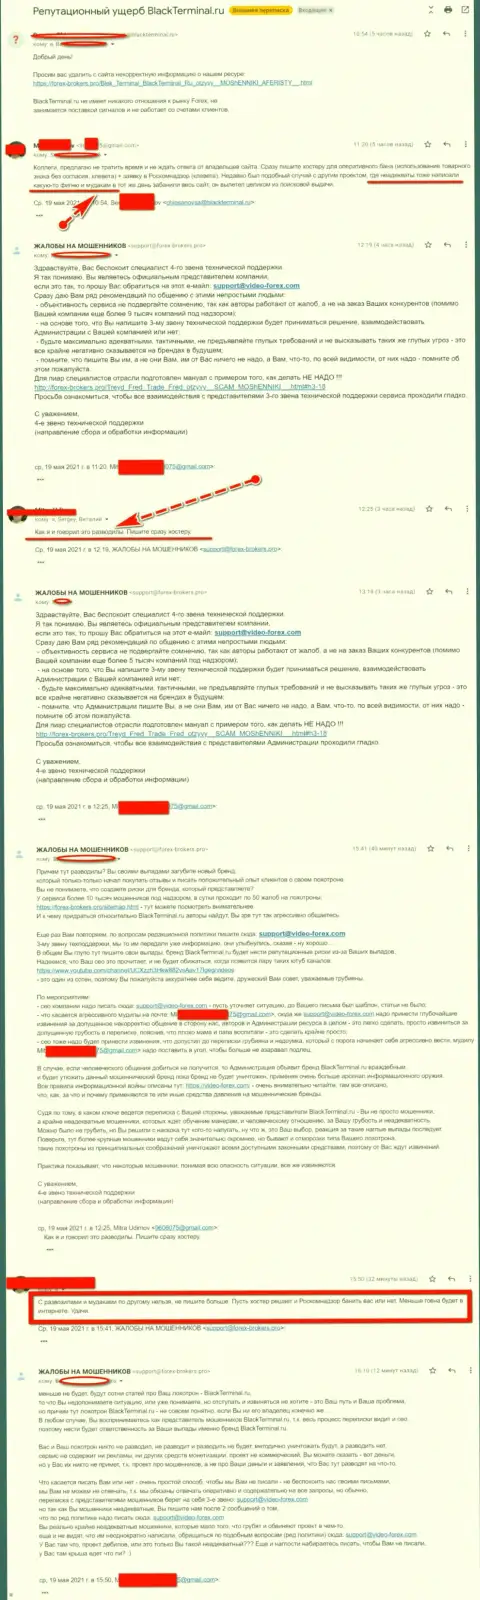 Онлайн переписка Администрации сайта, с реальными отзывами о BlackTerminal, с представителями данного противозаконно действующего сервиса